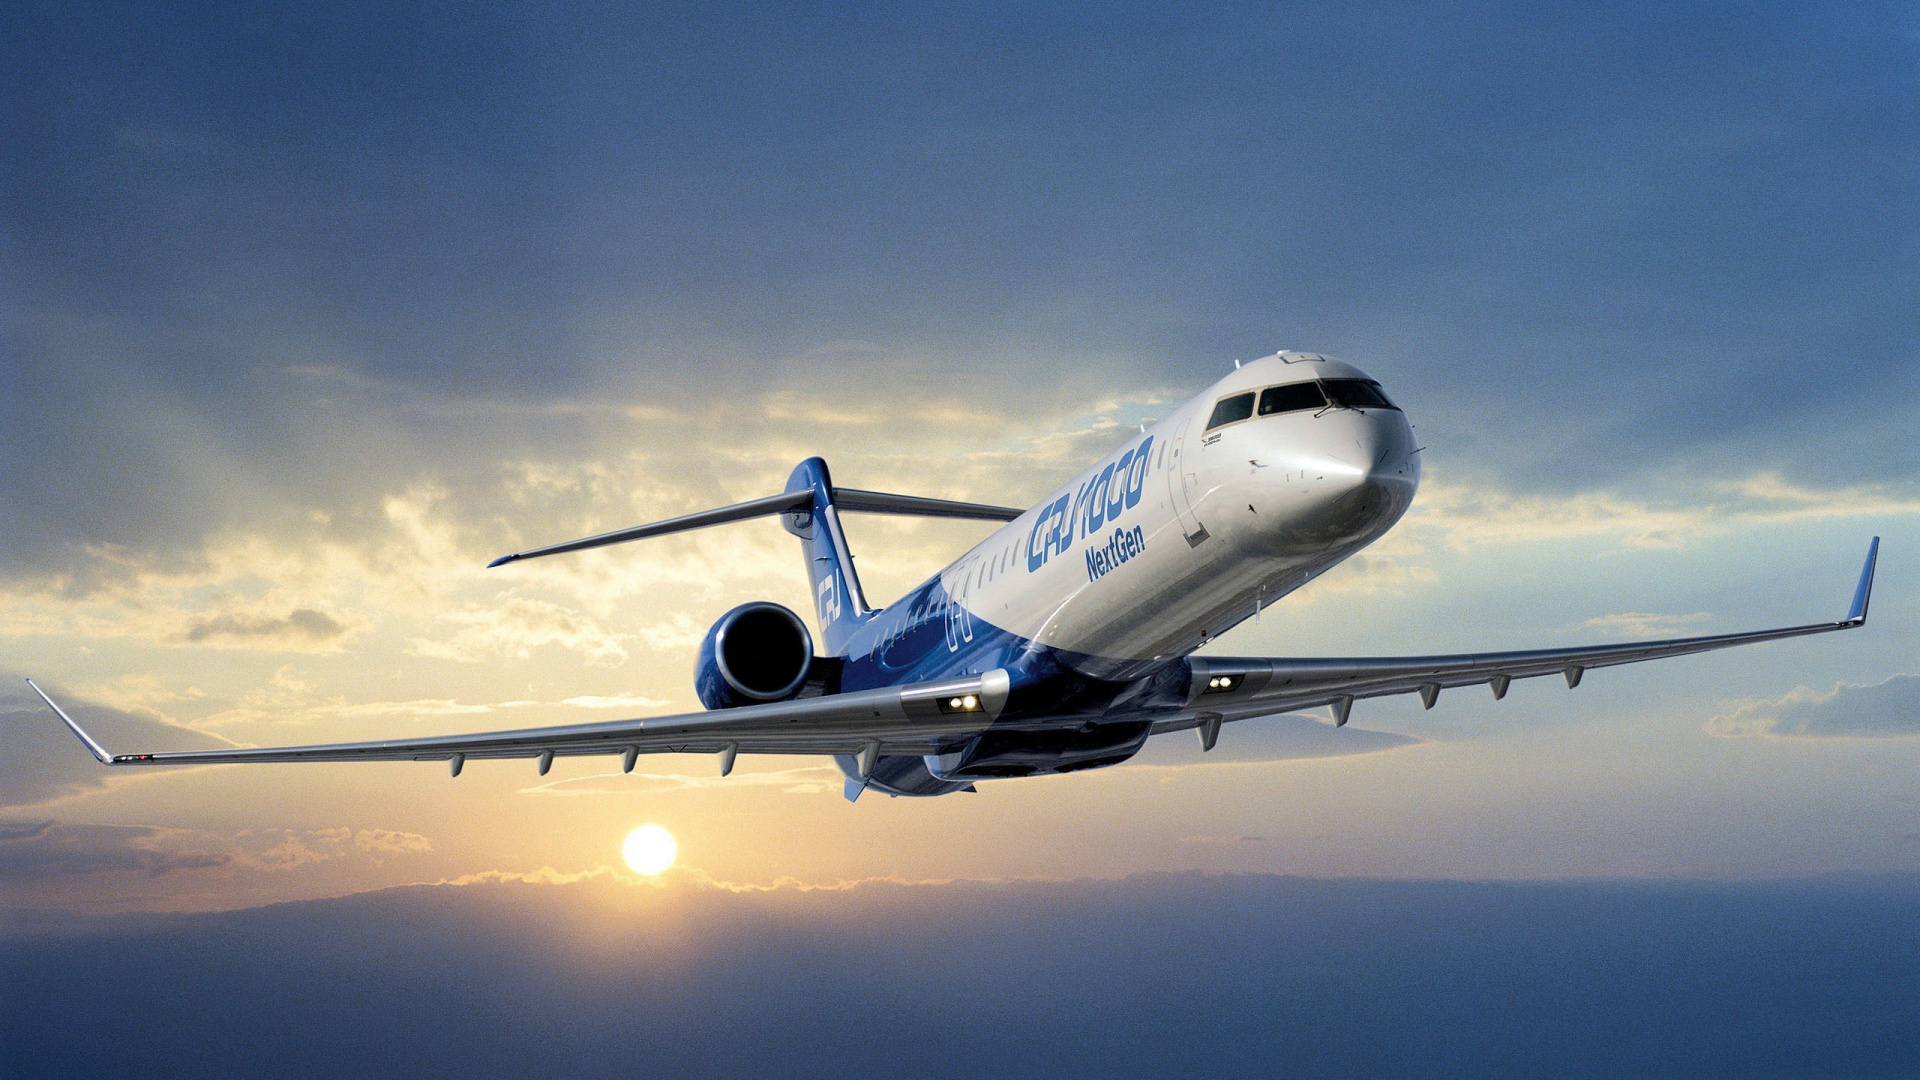 客机, 航空, 空中旅行, 航空公司, 航空航天工程 壁纸 1920x1080 允许